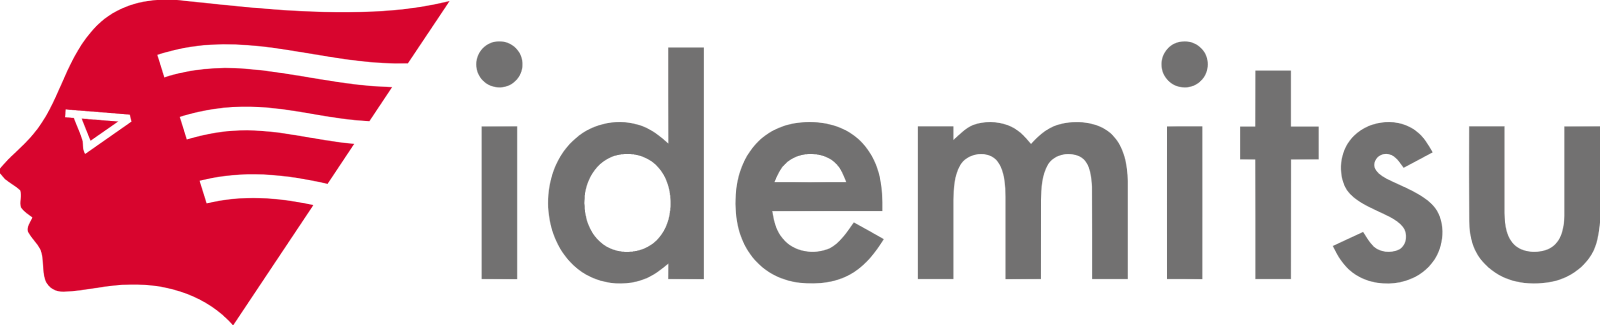 Idemitsu Kosan
 logo large (transparent PNG)